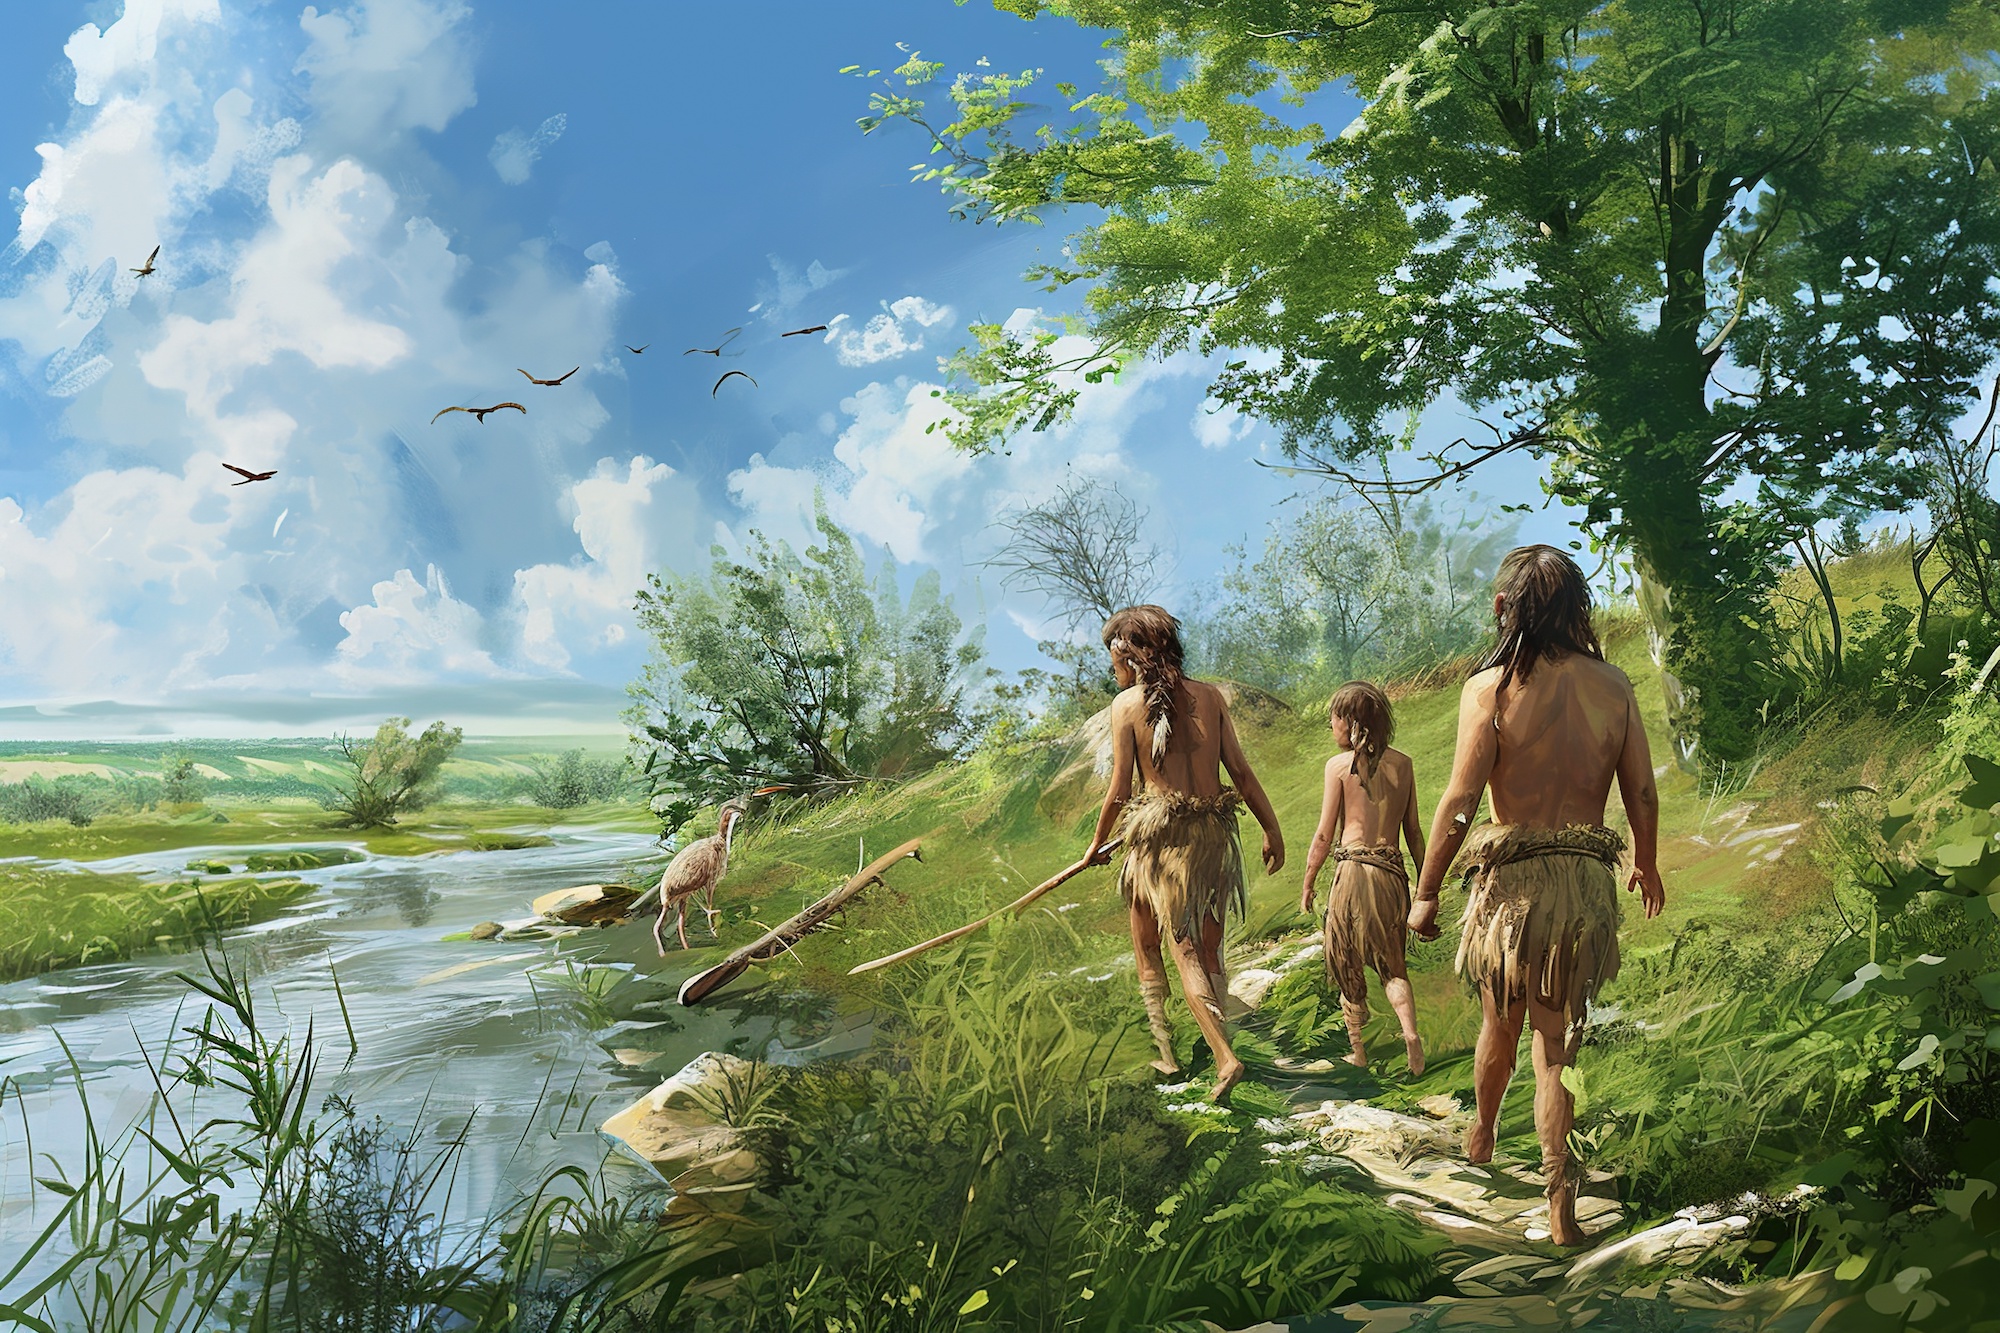 L'analyse d'anciens « chewing-gums » a permis de reconstruire les conditions de vie de jeunes chasseurs-cueilleurs au Paléolithique (image générée à l'aide de l'IA). © Kristian, Adobe Stock